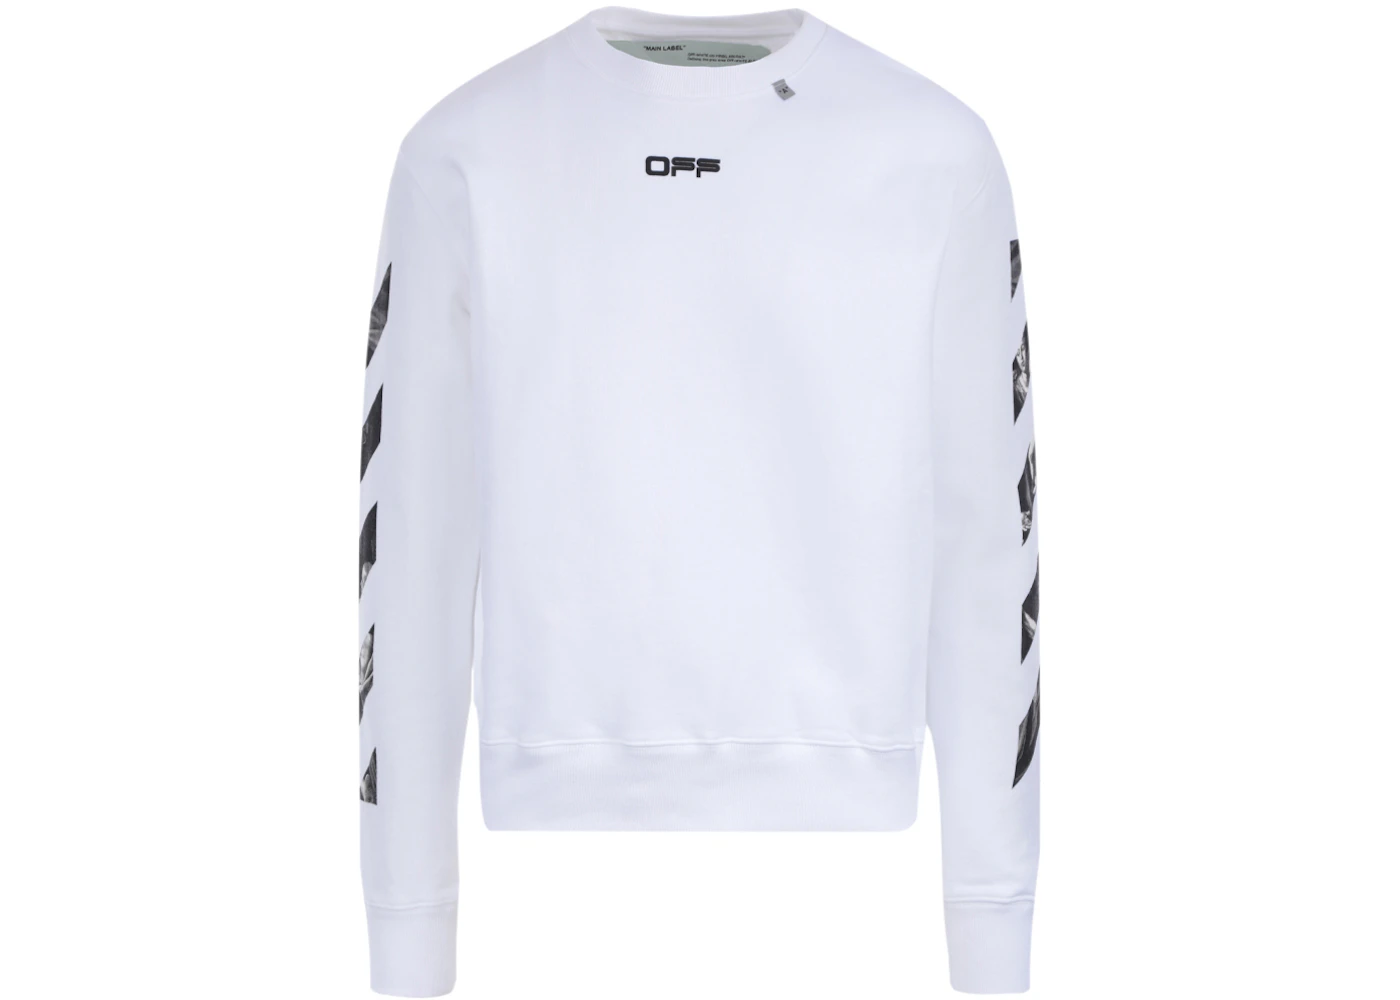 OFF-WHITE Caravaggio Square Graphic Sweatshirt White/Multicolor - SS20 ...